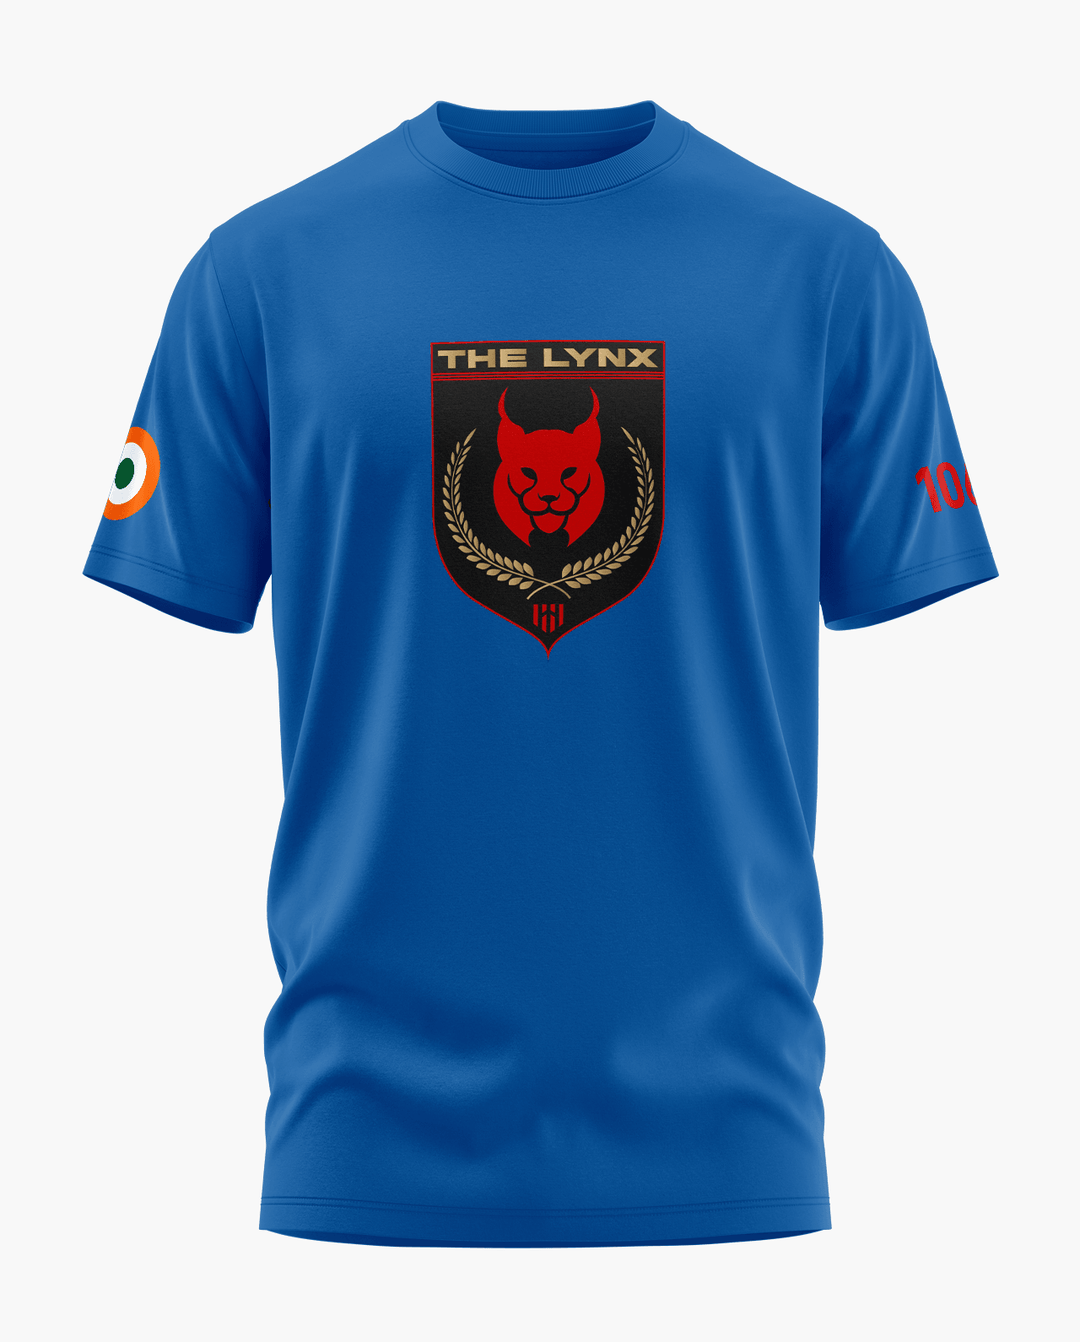 THE LYNX T-Shirt - Aero Armour